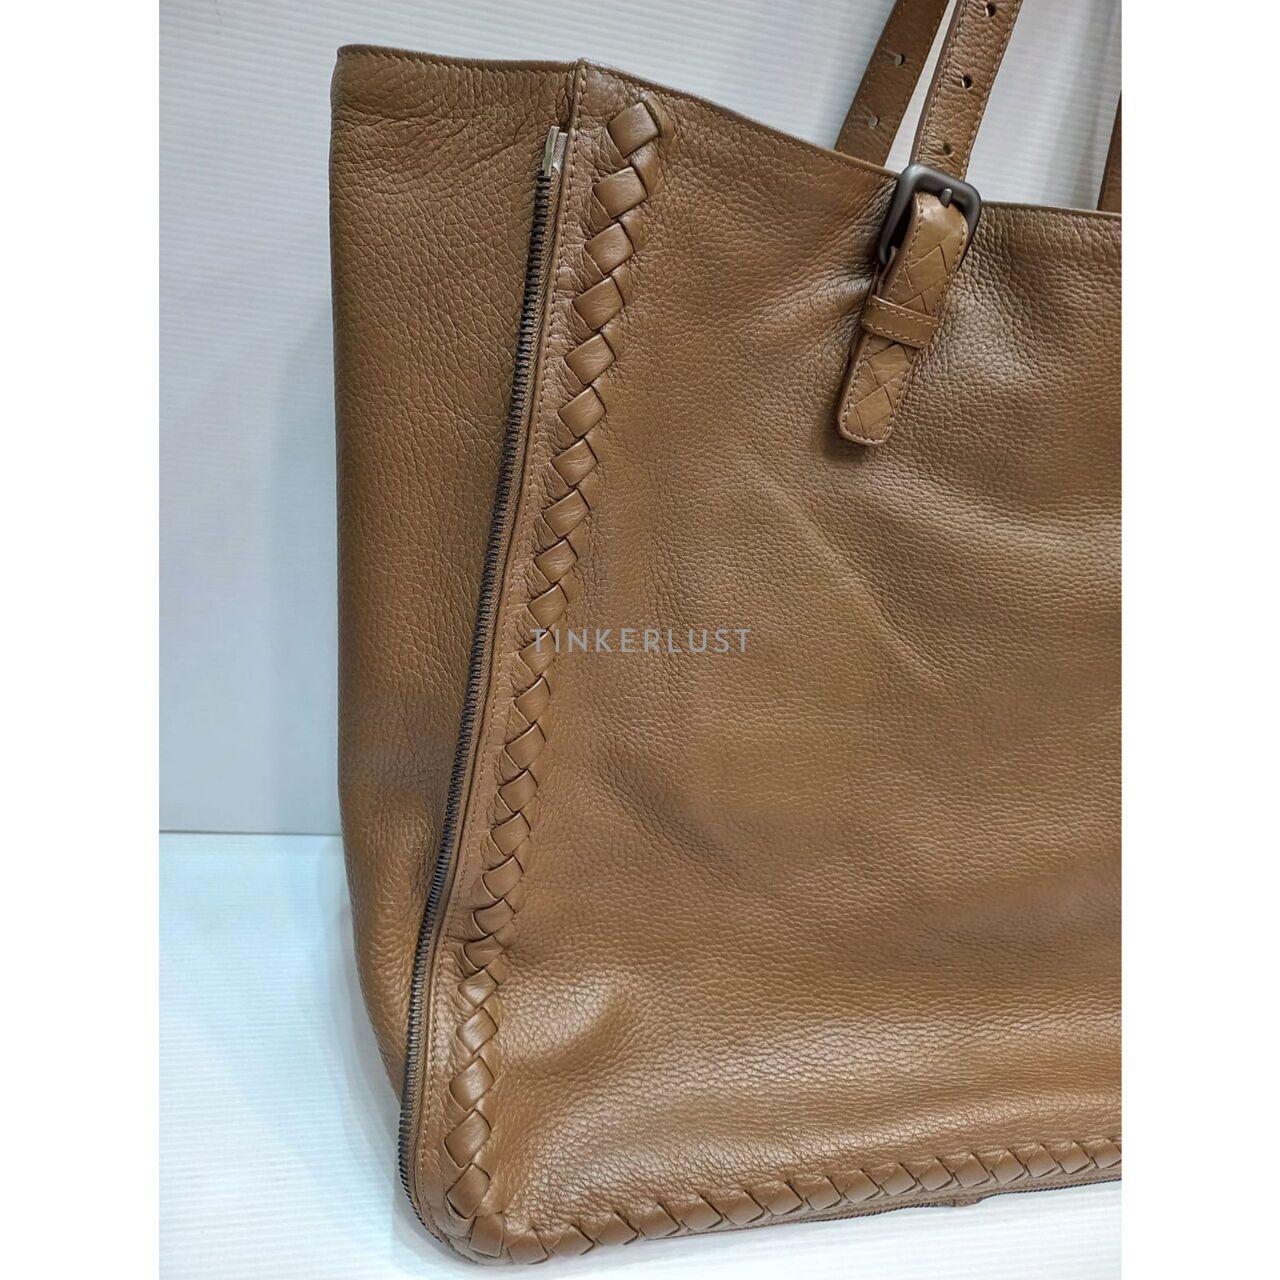 Bottega Veneta Intrecciato leather Dark Brown Tote Bag 